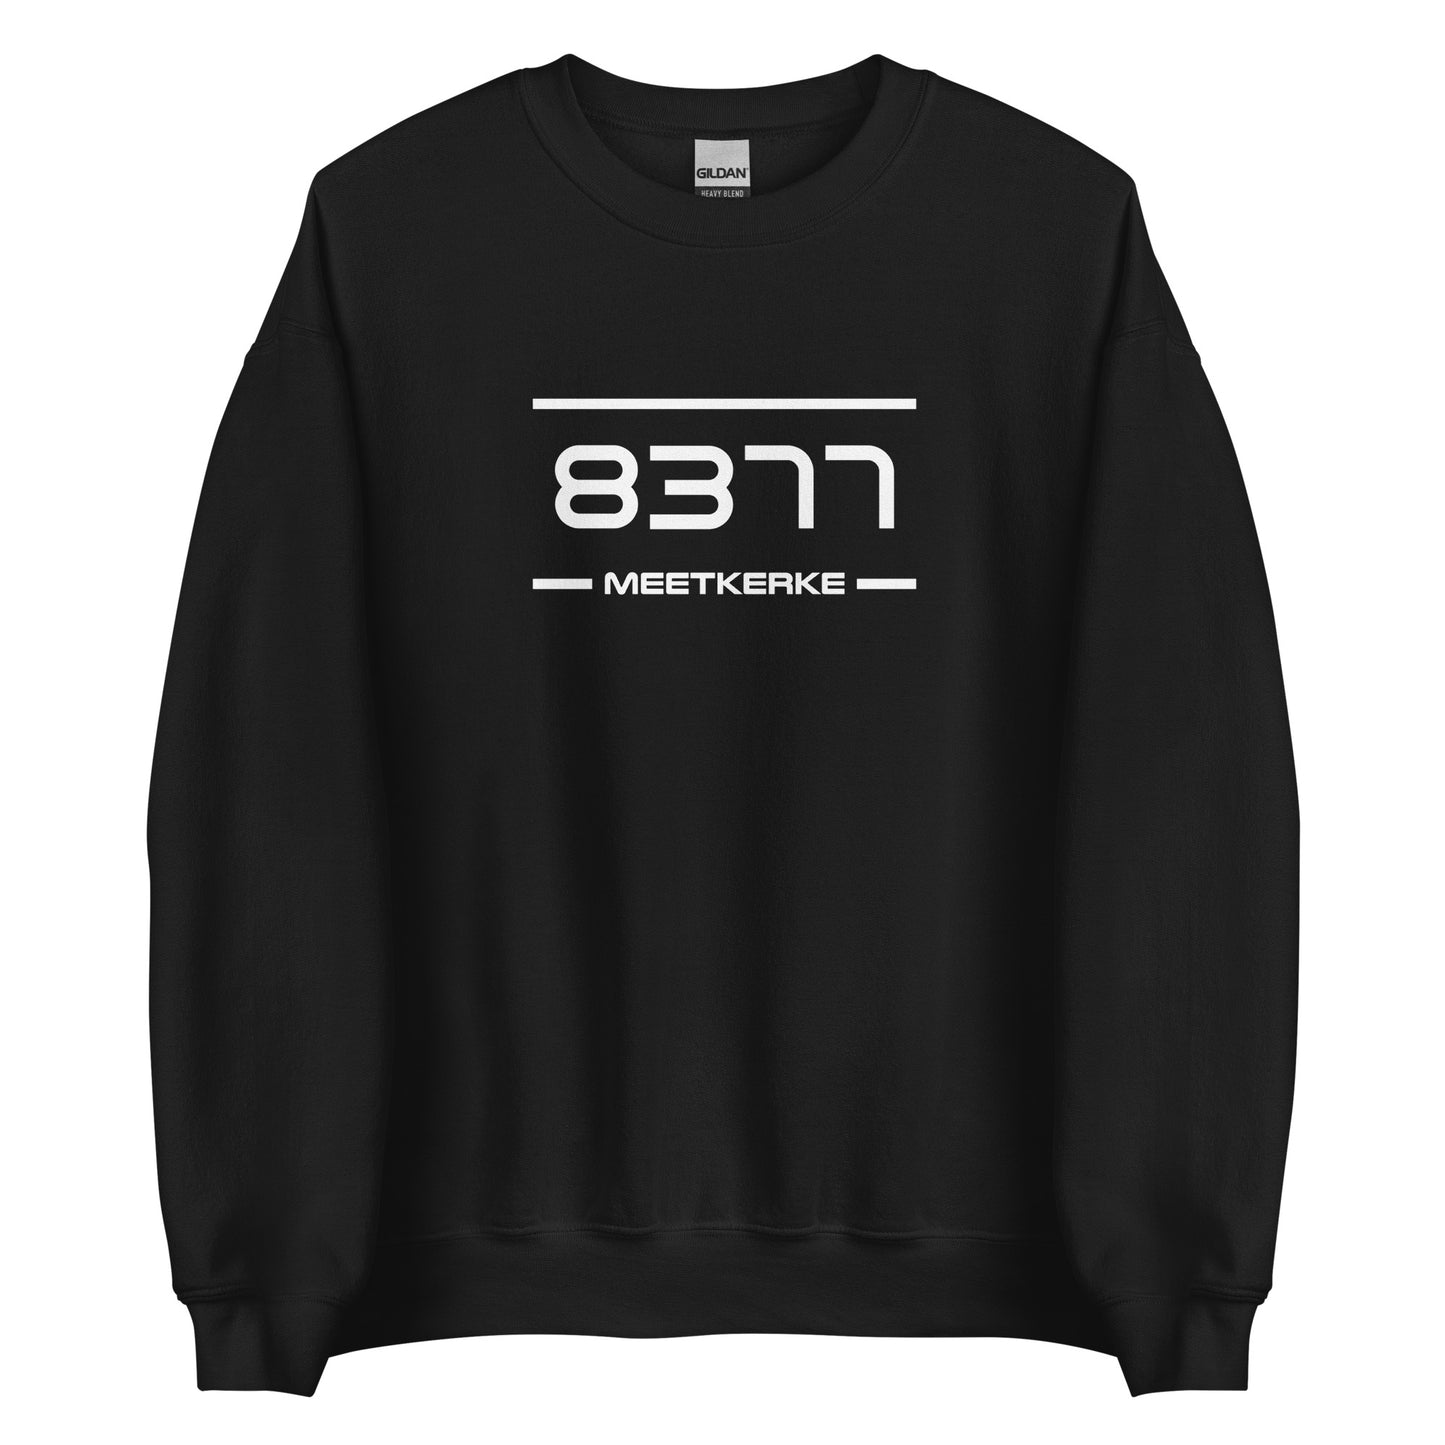 Sweater - 8377 - Meetkerke (M/V)